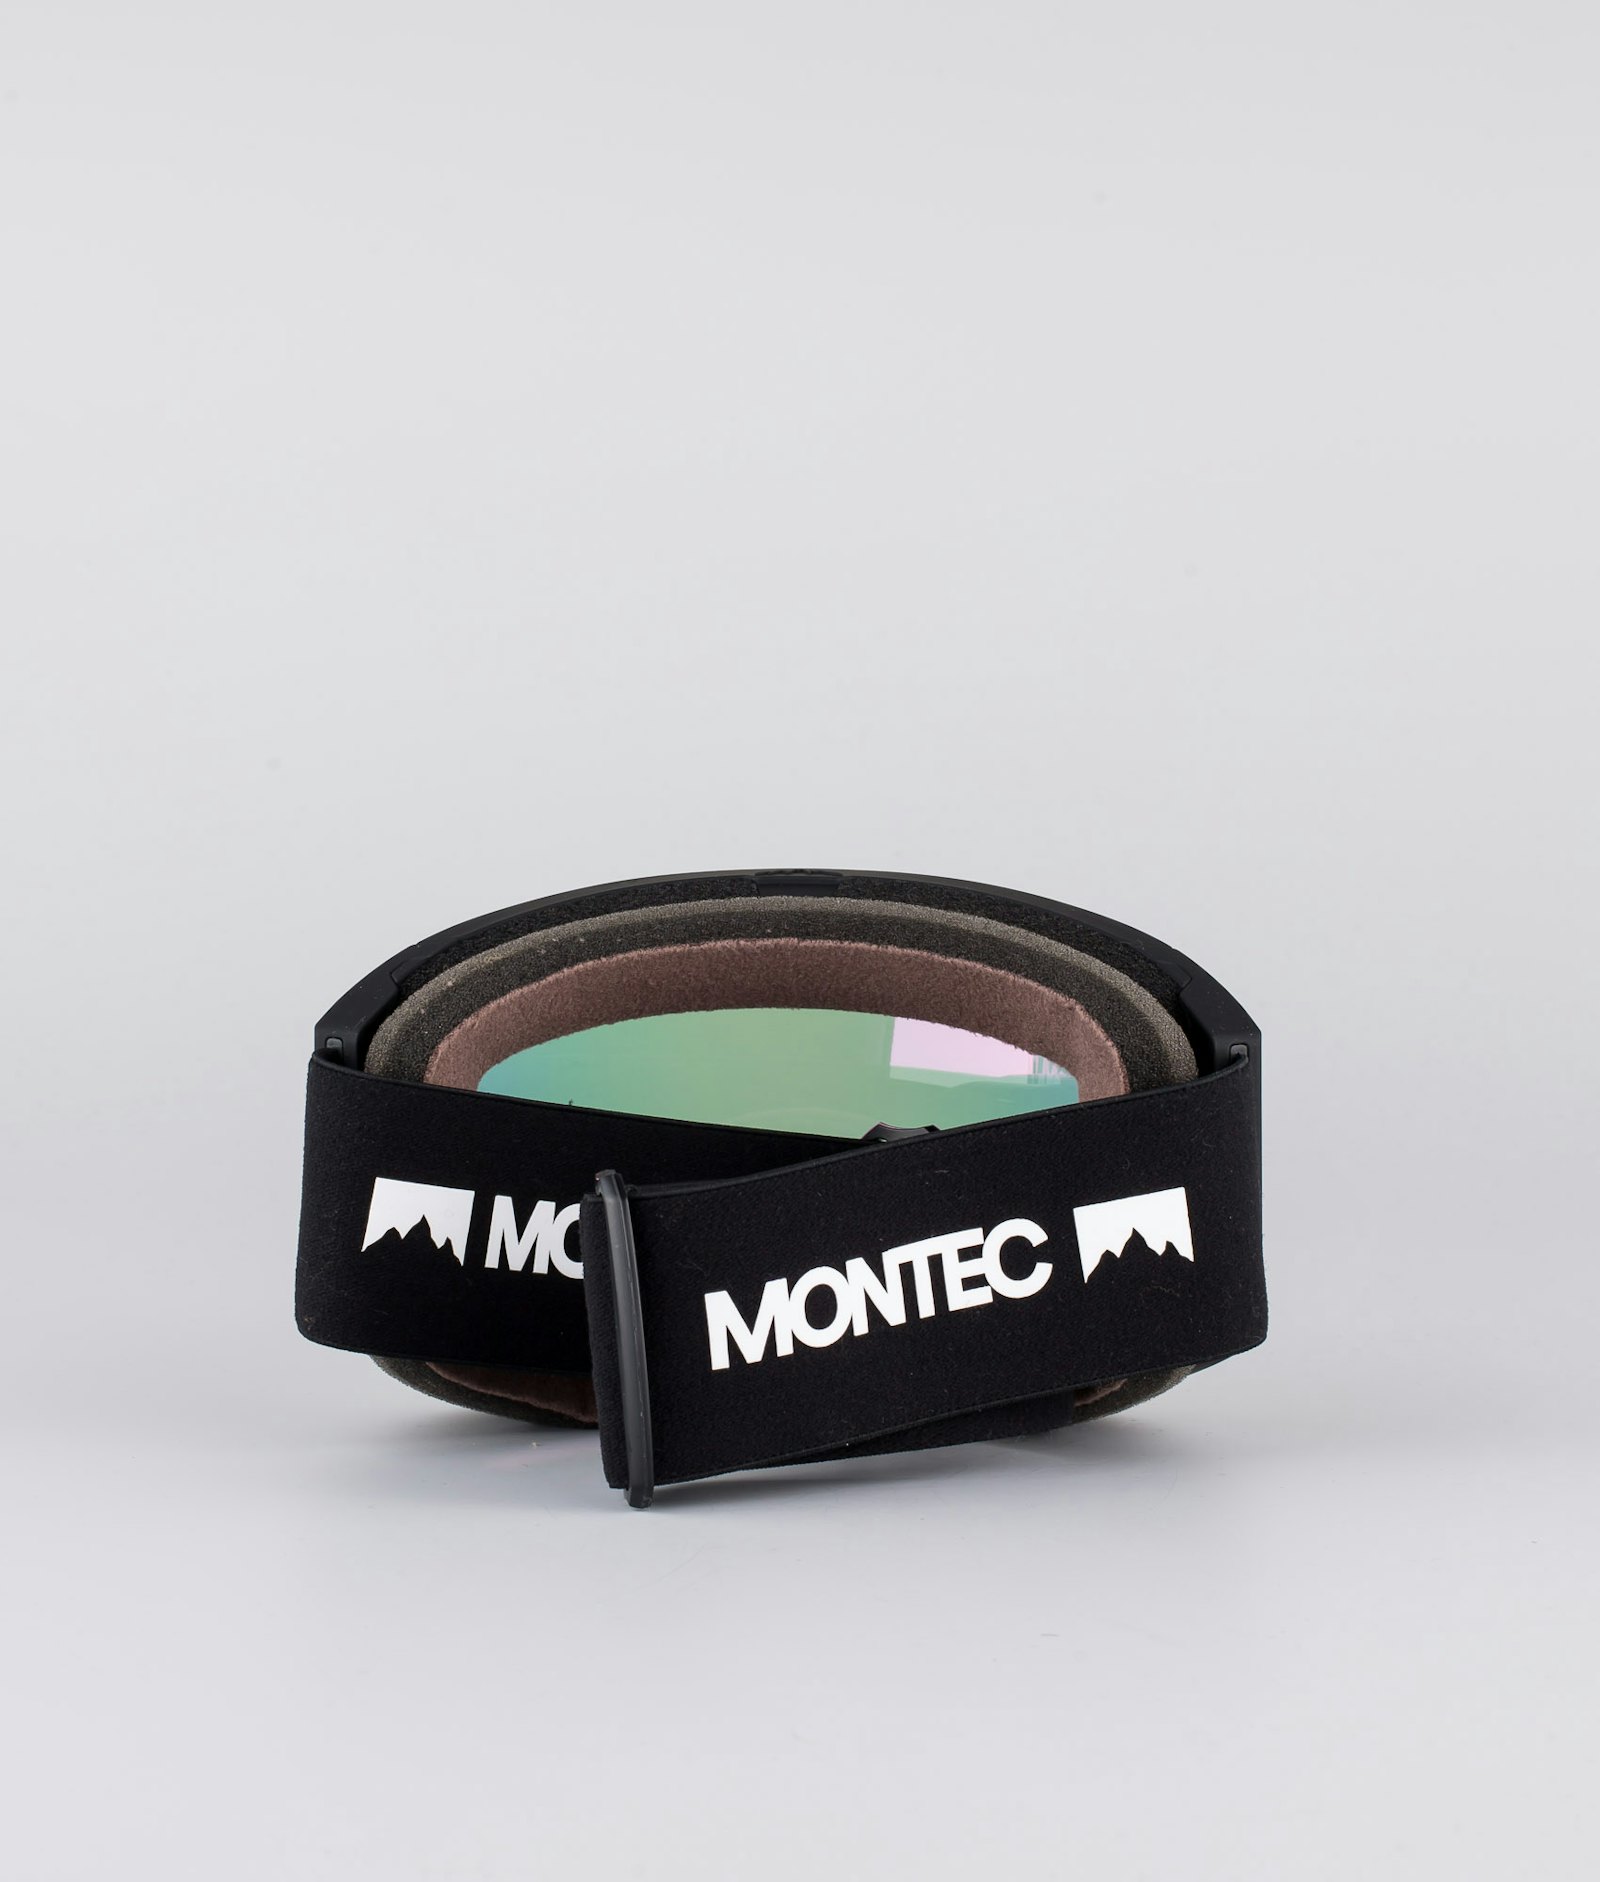 Montec Scope 2020 Medium Skibril Black/Pink Sapphire